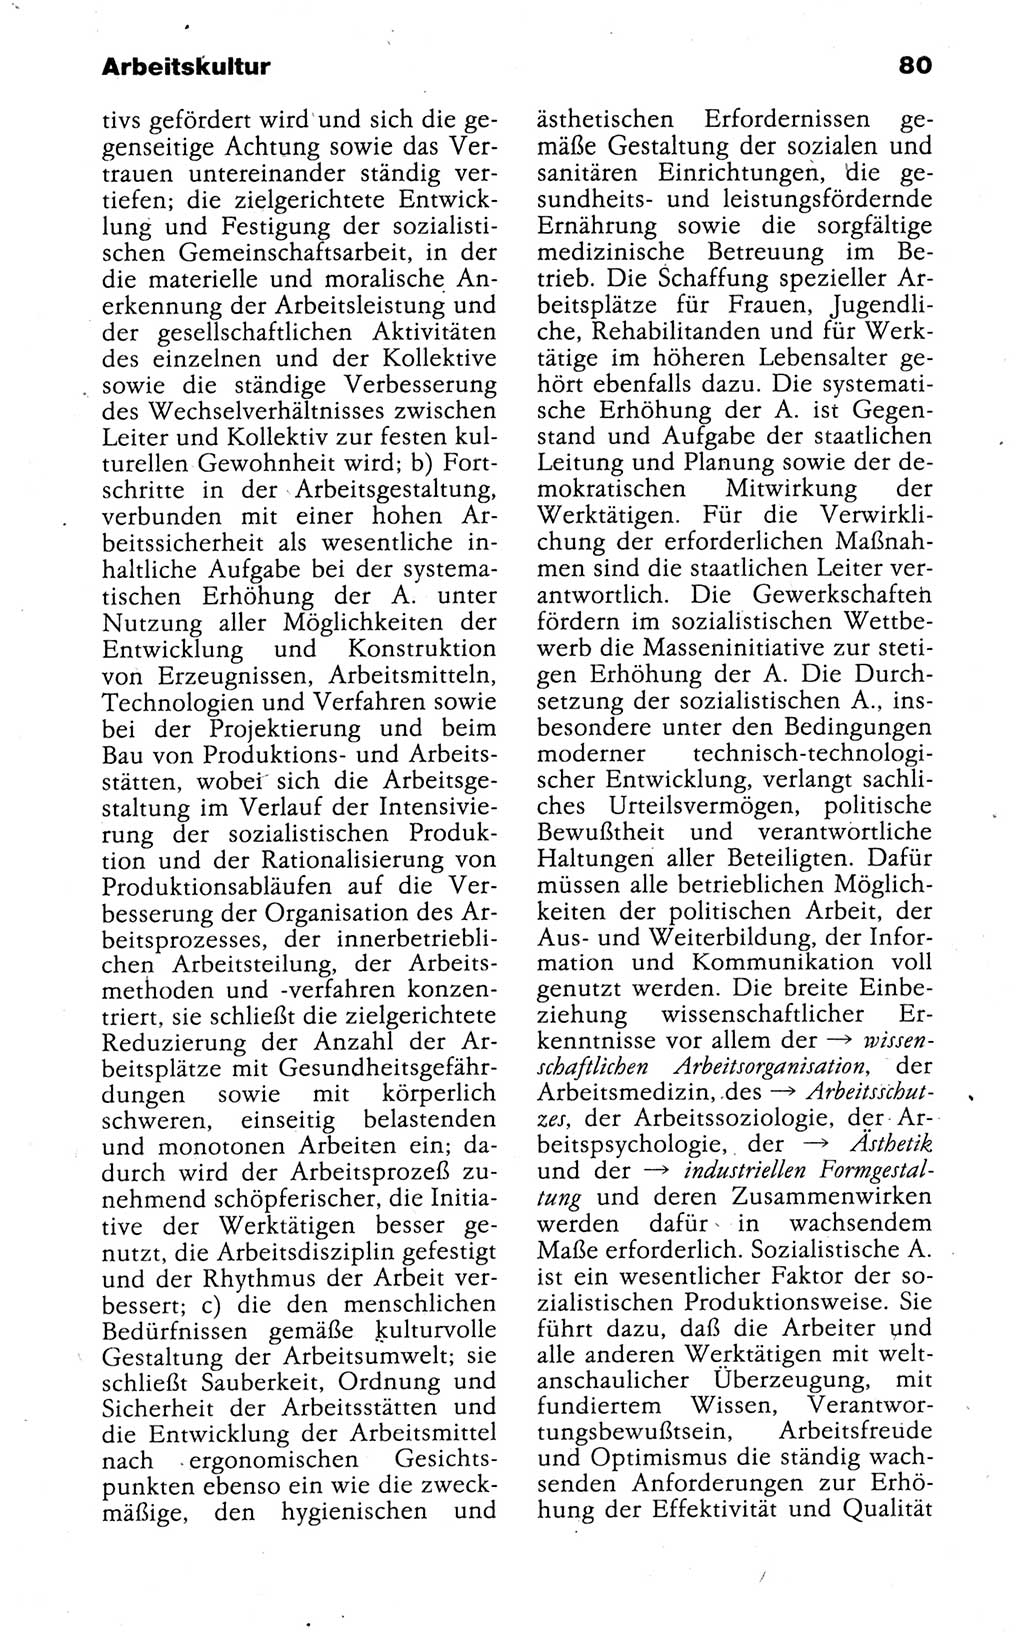 Kleines politisches Wörterbuch [Deutsche Demokratische Republik (DDR)] 1988, Seite 80 (Kl. pol. Wb. DDR 1988, S. 80)